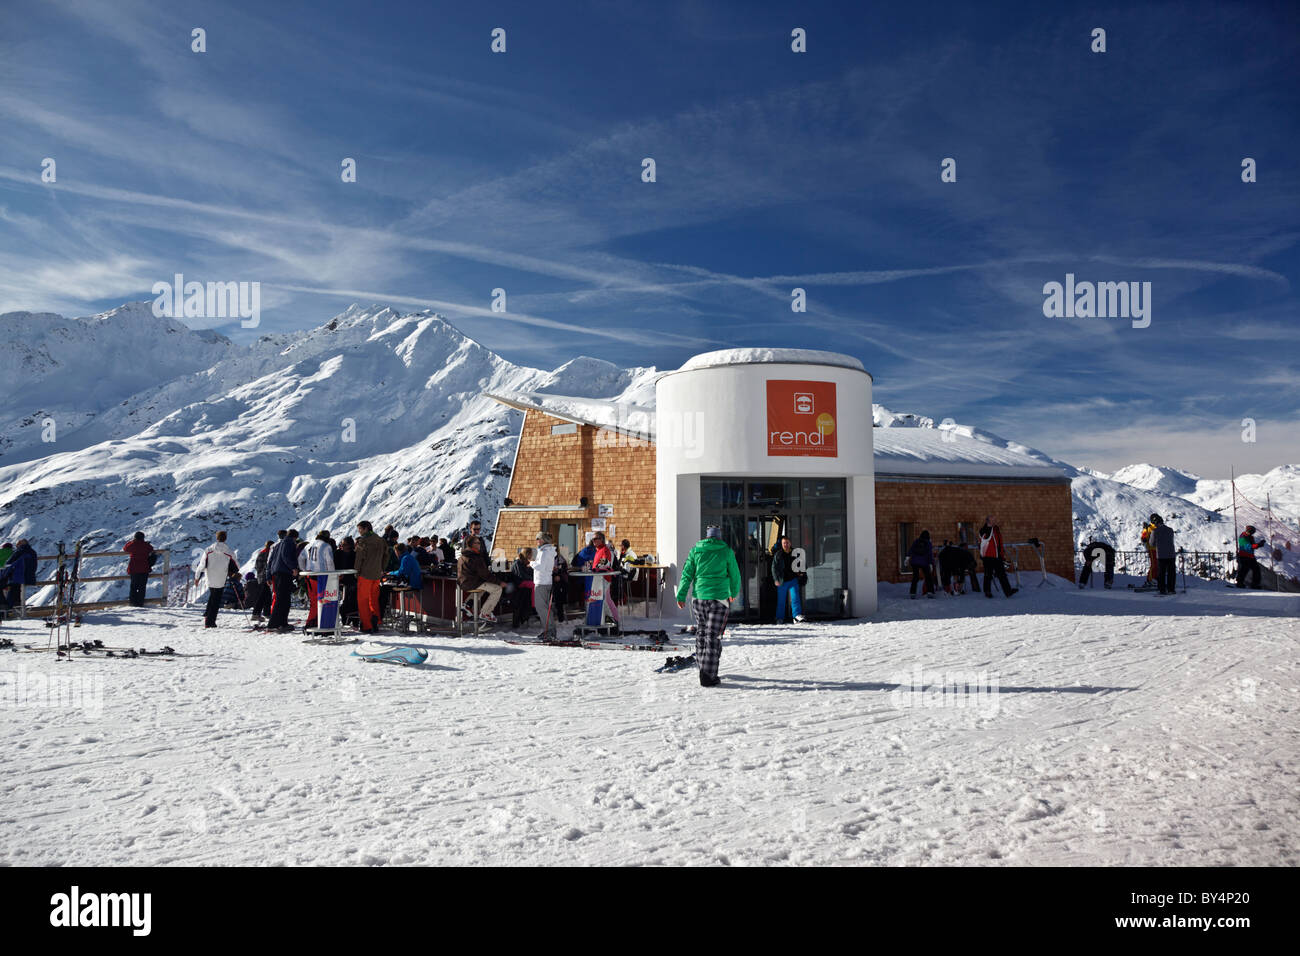 Les skieurs et snowboarders de prendre une pause au nouveau bar de plein air à Rendlbeach Banque D'Images